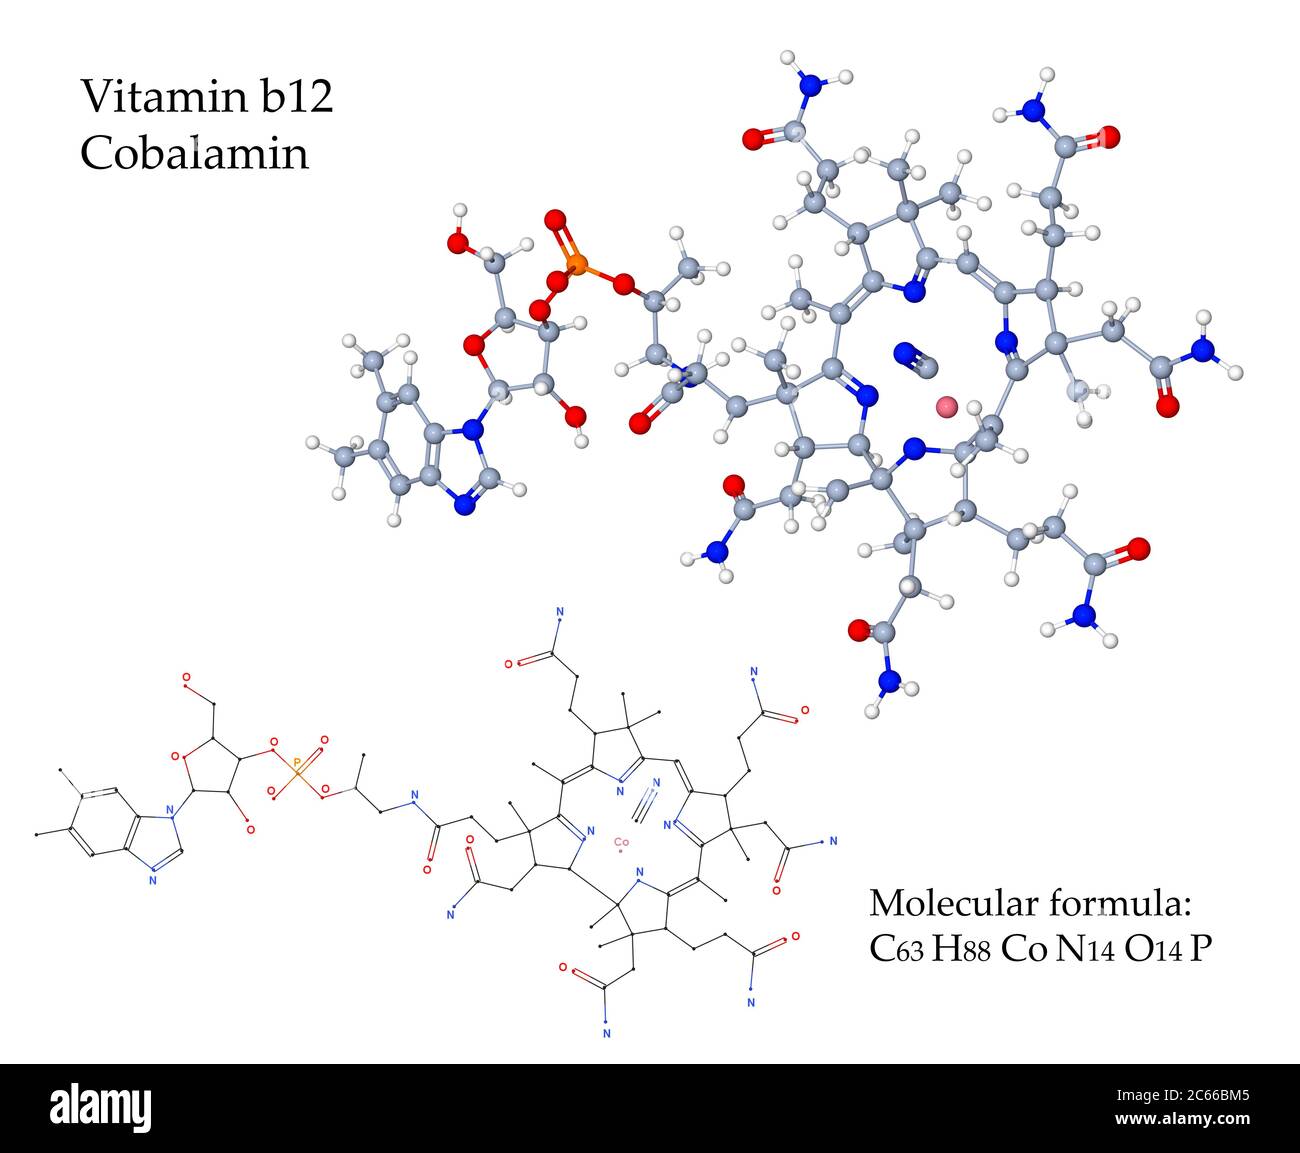 La vitamine B12 la cobalamine est essentielle à la synthèse des globules rouges par la moelle osseuse. Les sources alimentaires sont des produits animaux comme la viande, le lait, les œufs Banque D'Images